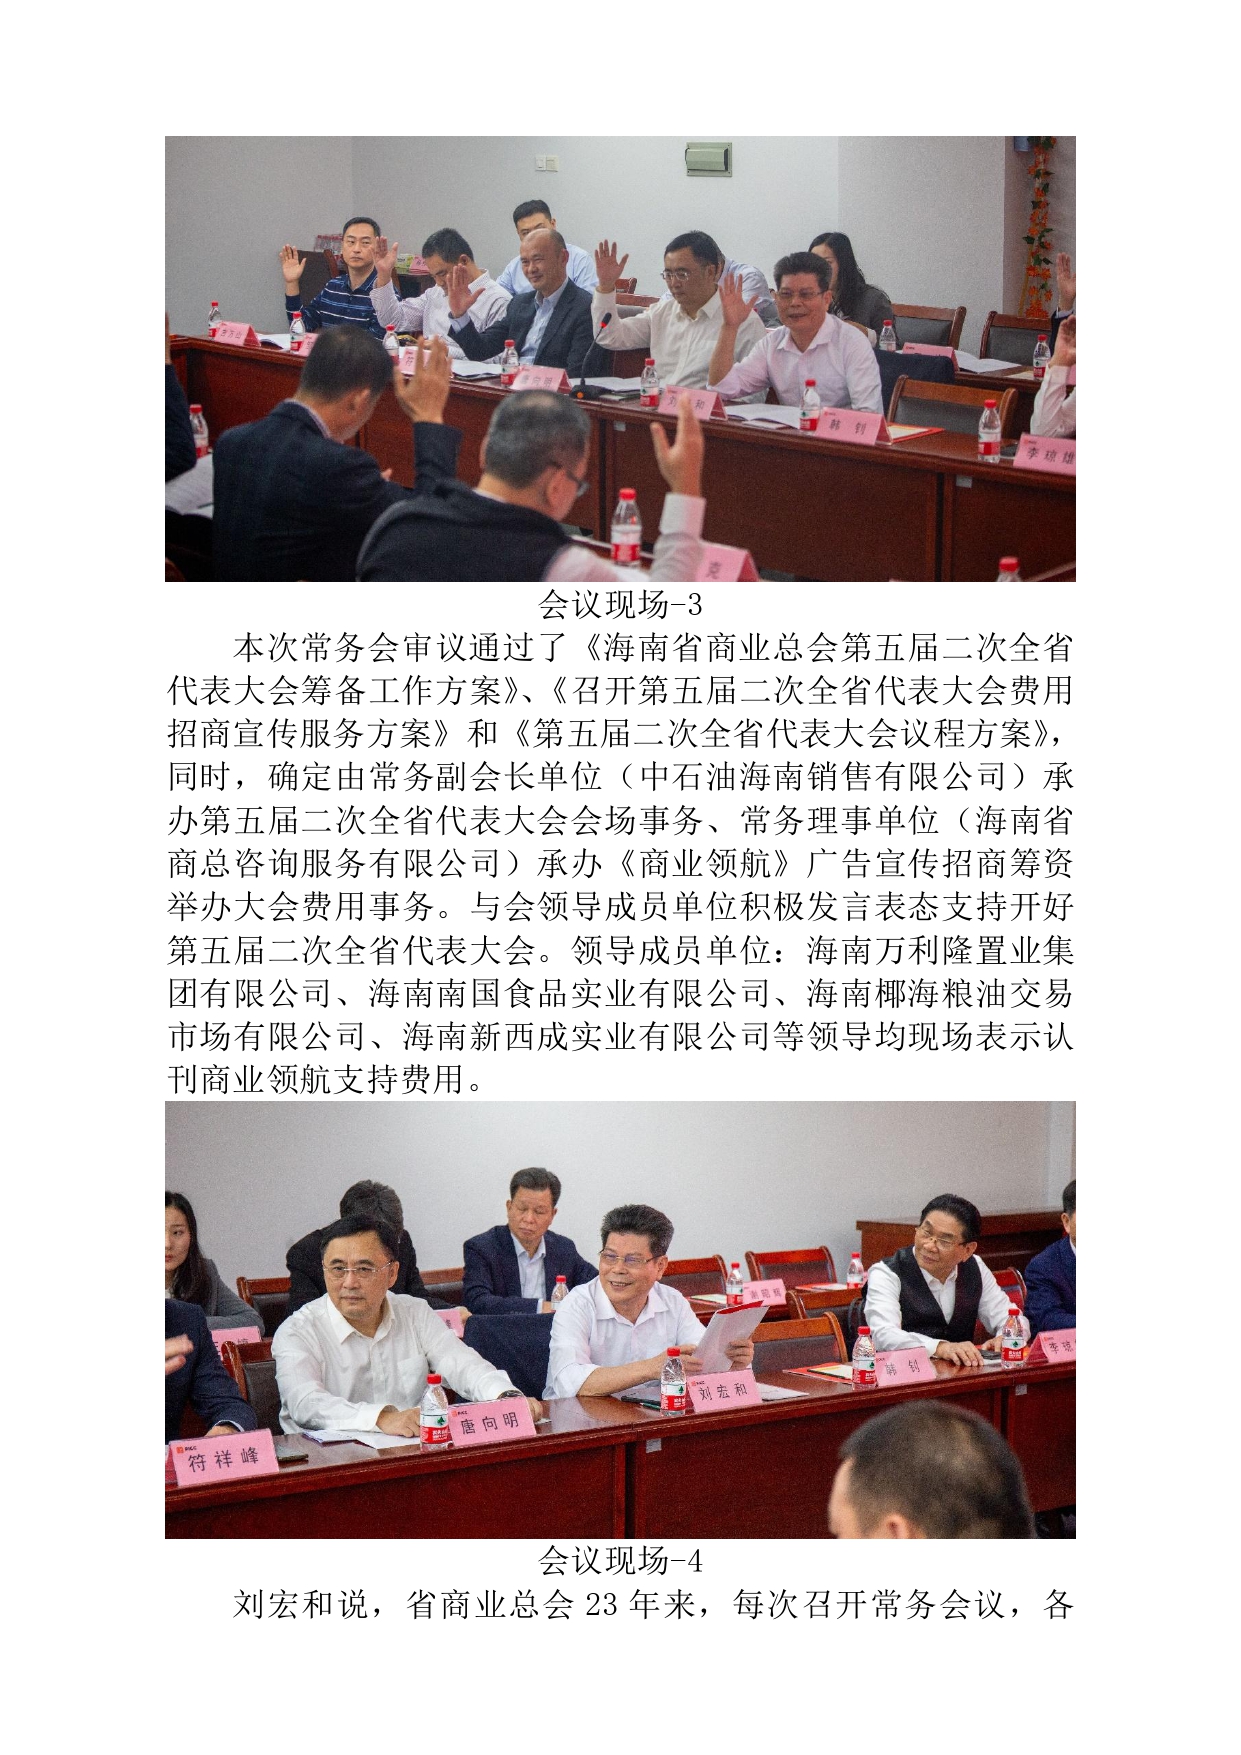 海南省商业总会第五届二次全省代表大会拟于12月12日在海口召开。_page-0002.jpg